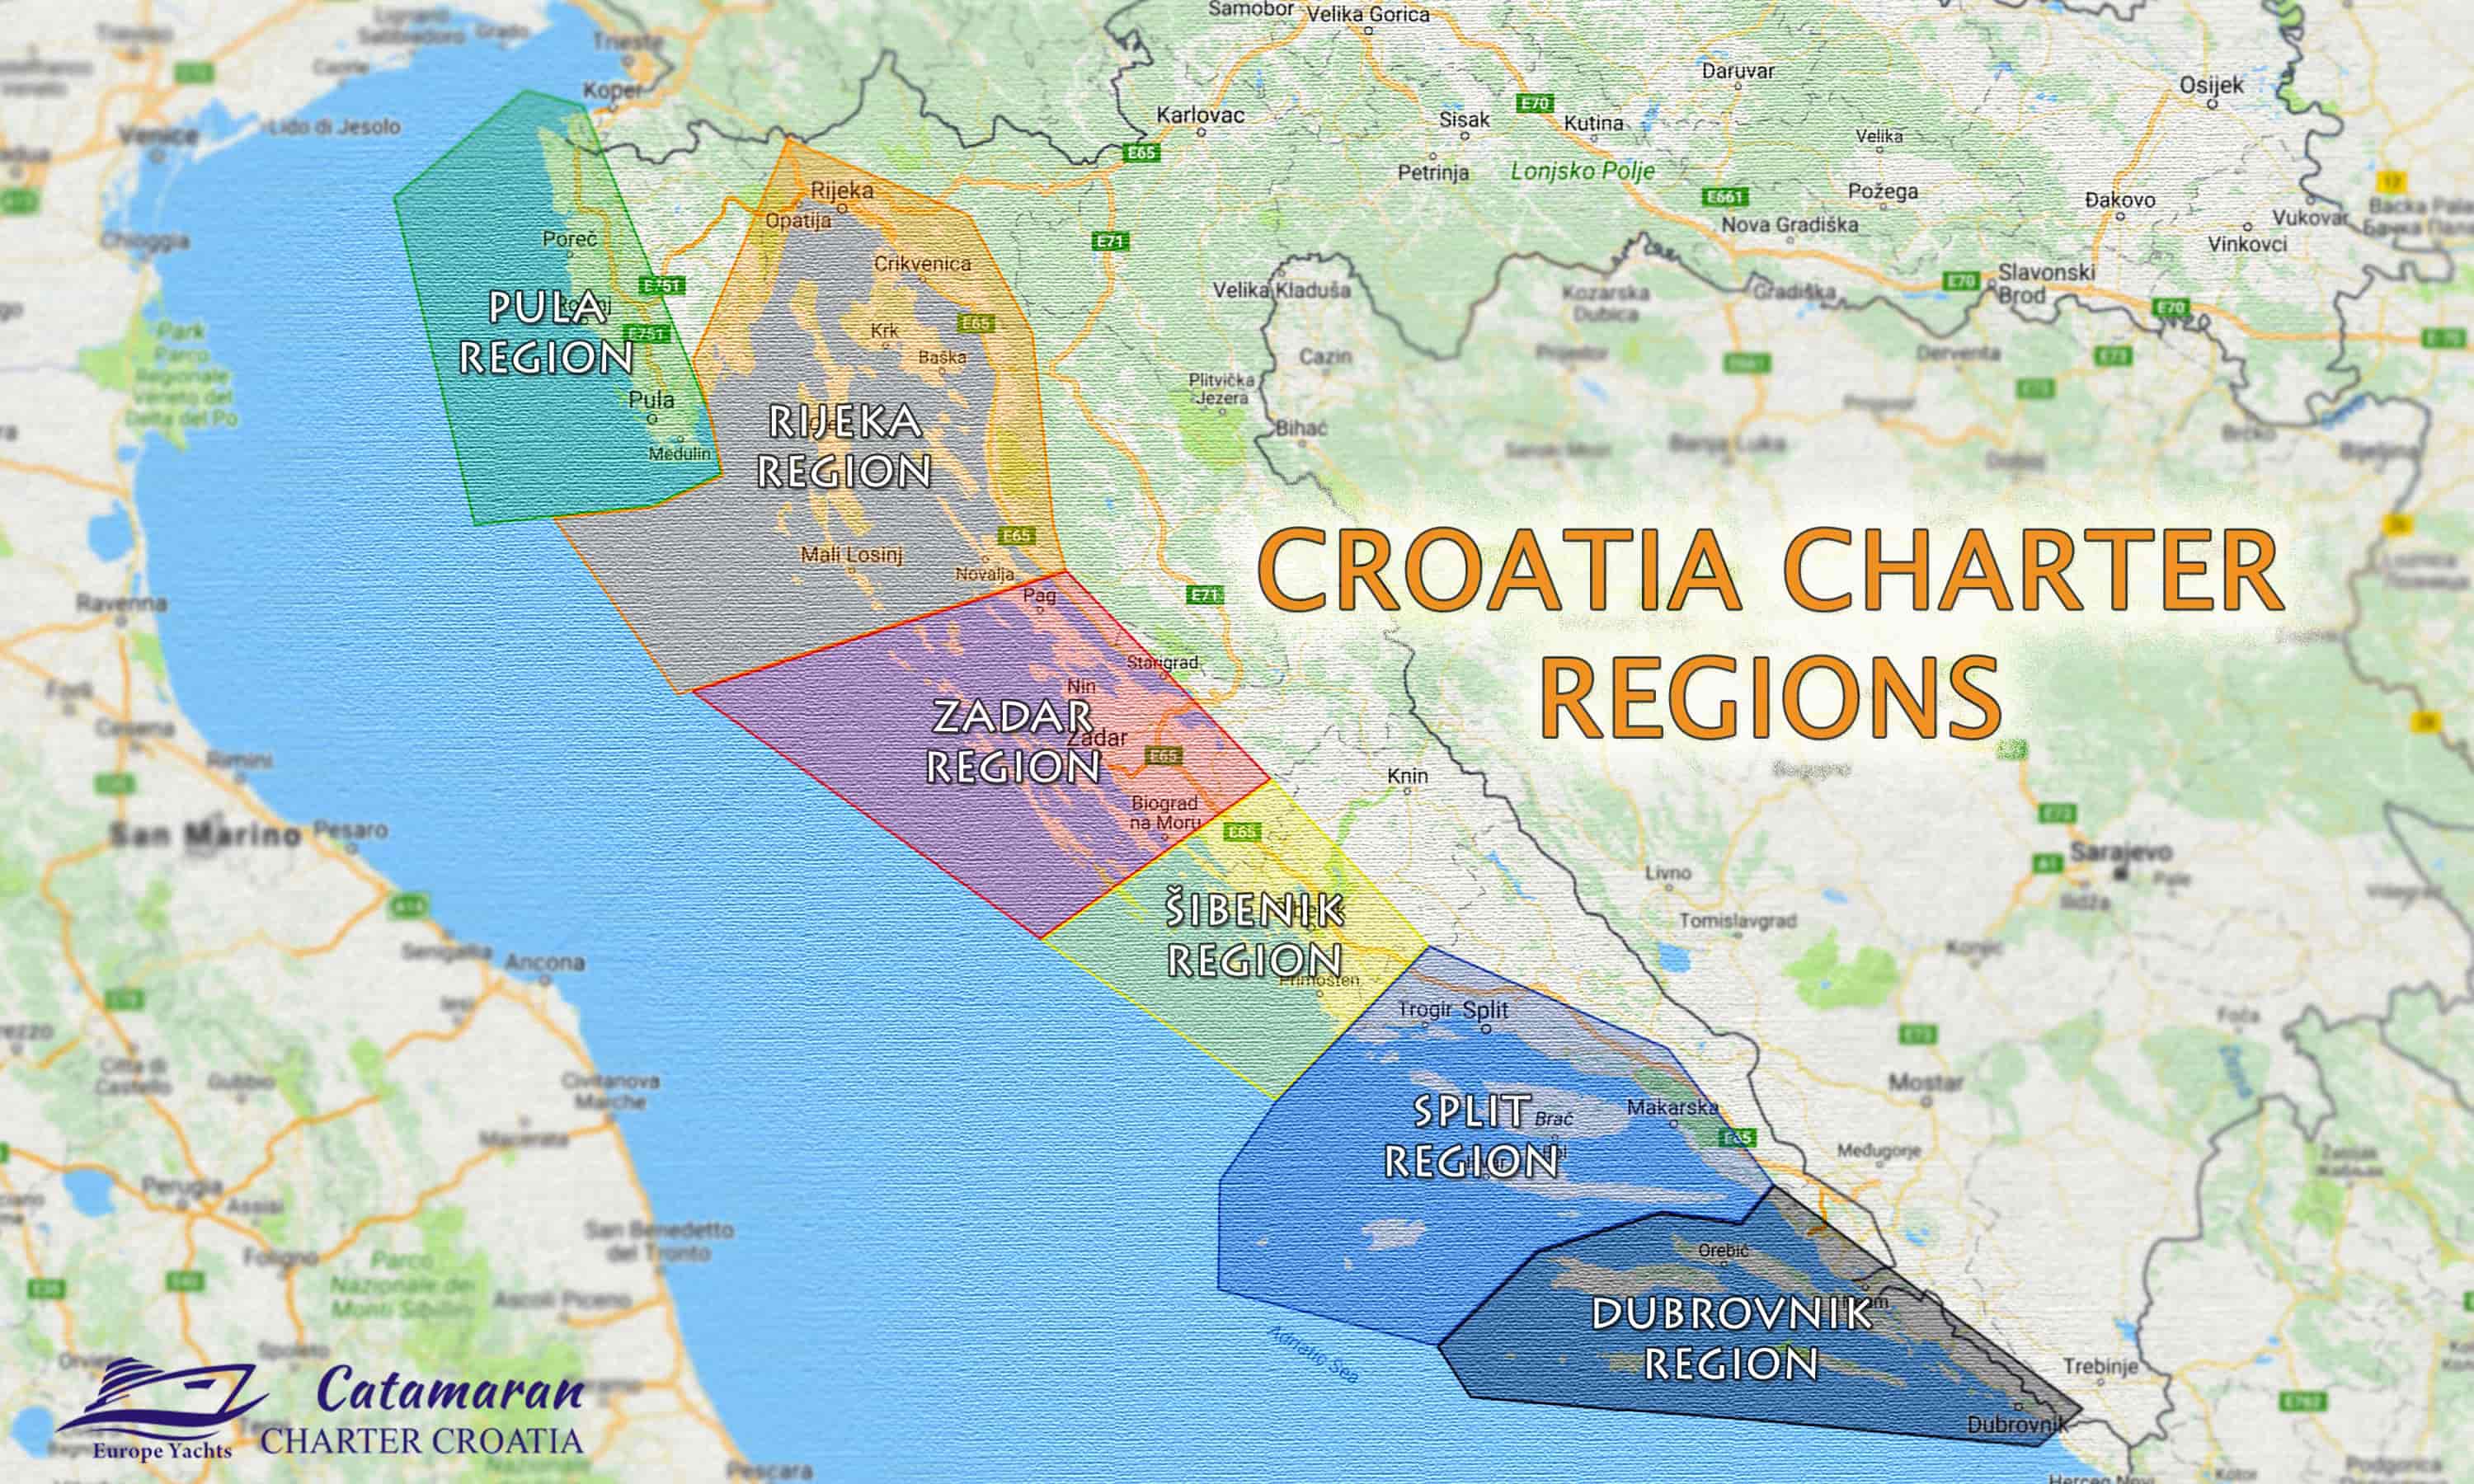 Catamaran Charter Croatia regions / destinations